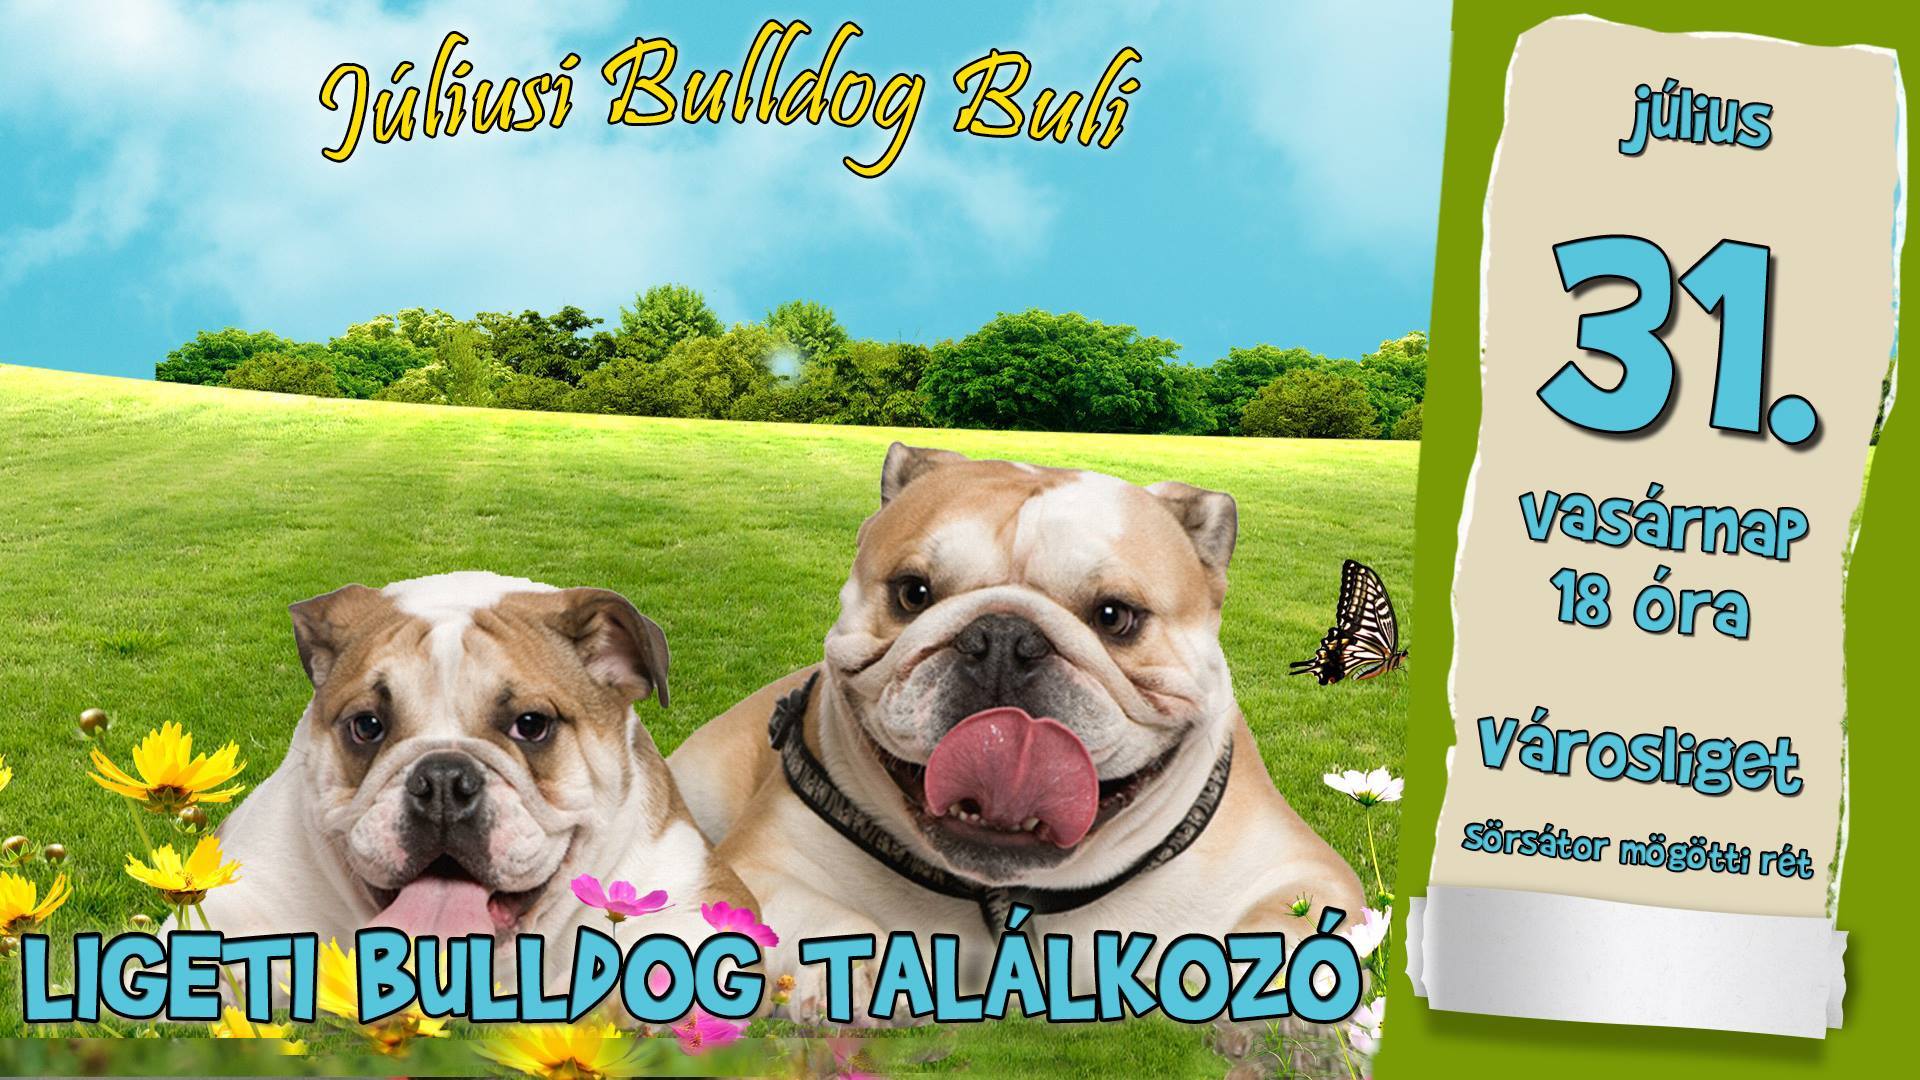  Ligeti Bulldog Találkozó - Júliusi Bulldog Buli